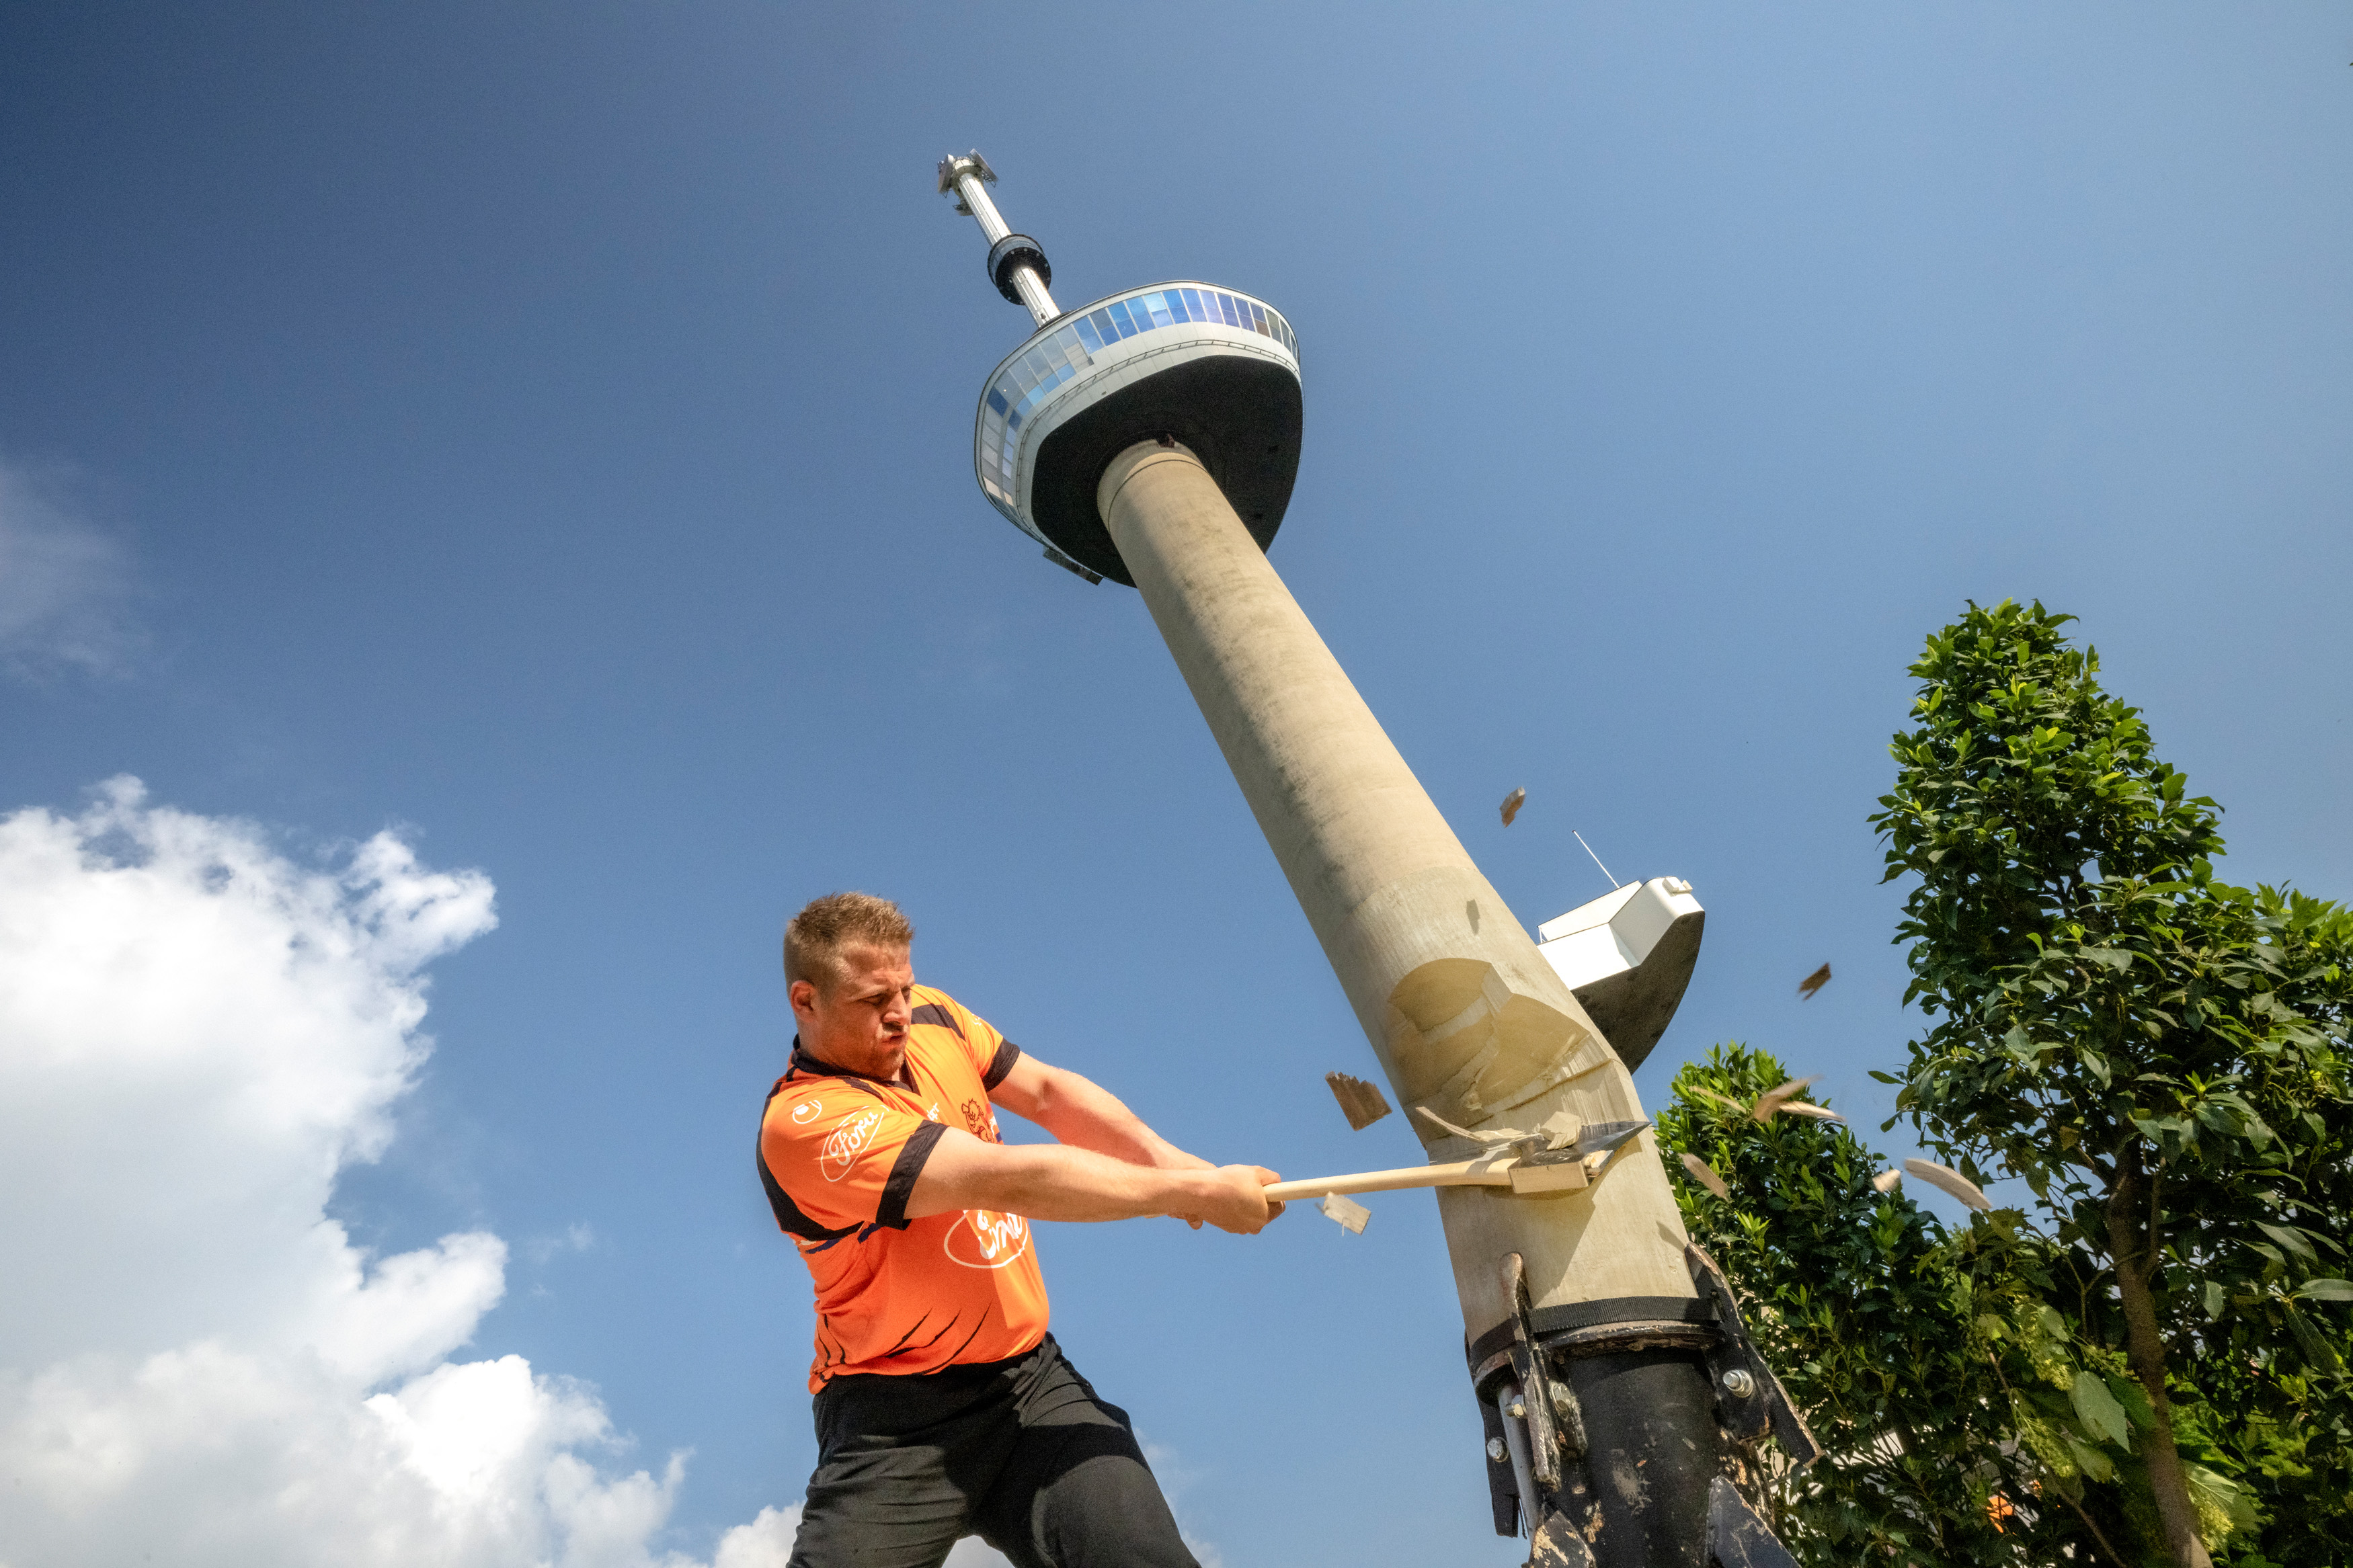 STIHL TIMBERSPORTS® Athlet Redmer Knol aus den Niederlanden durchschlägt symbolisch den Euromast Tower in Rotterdam